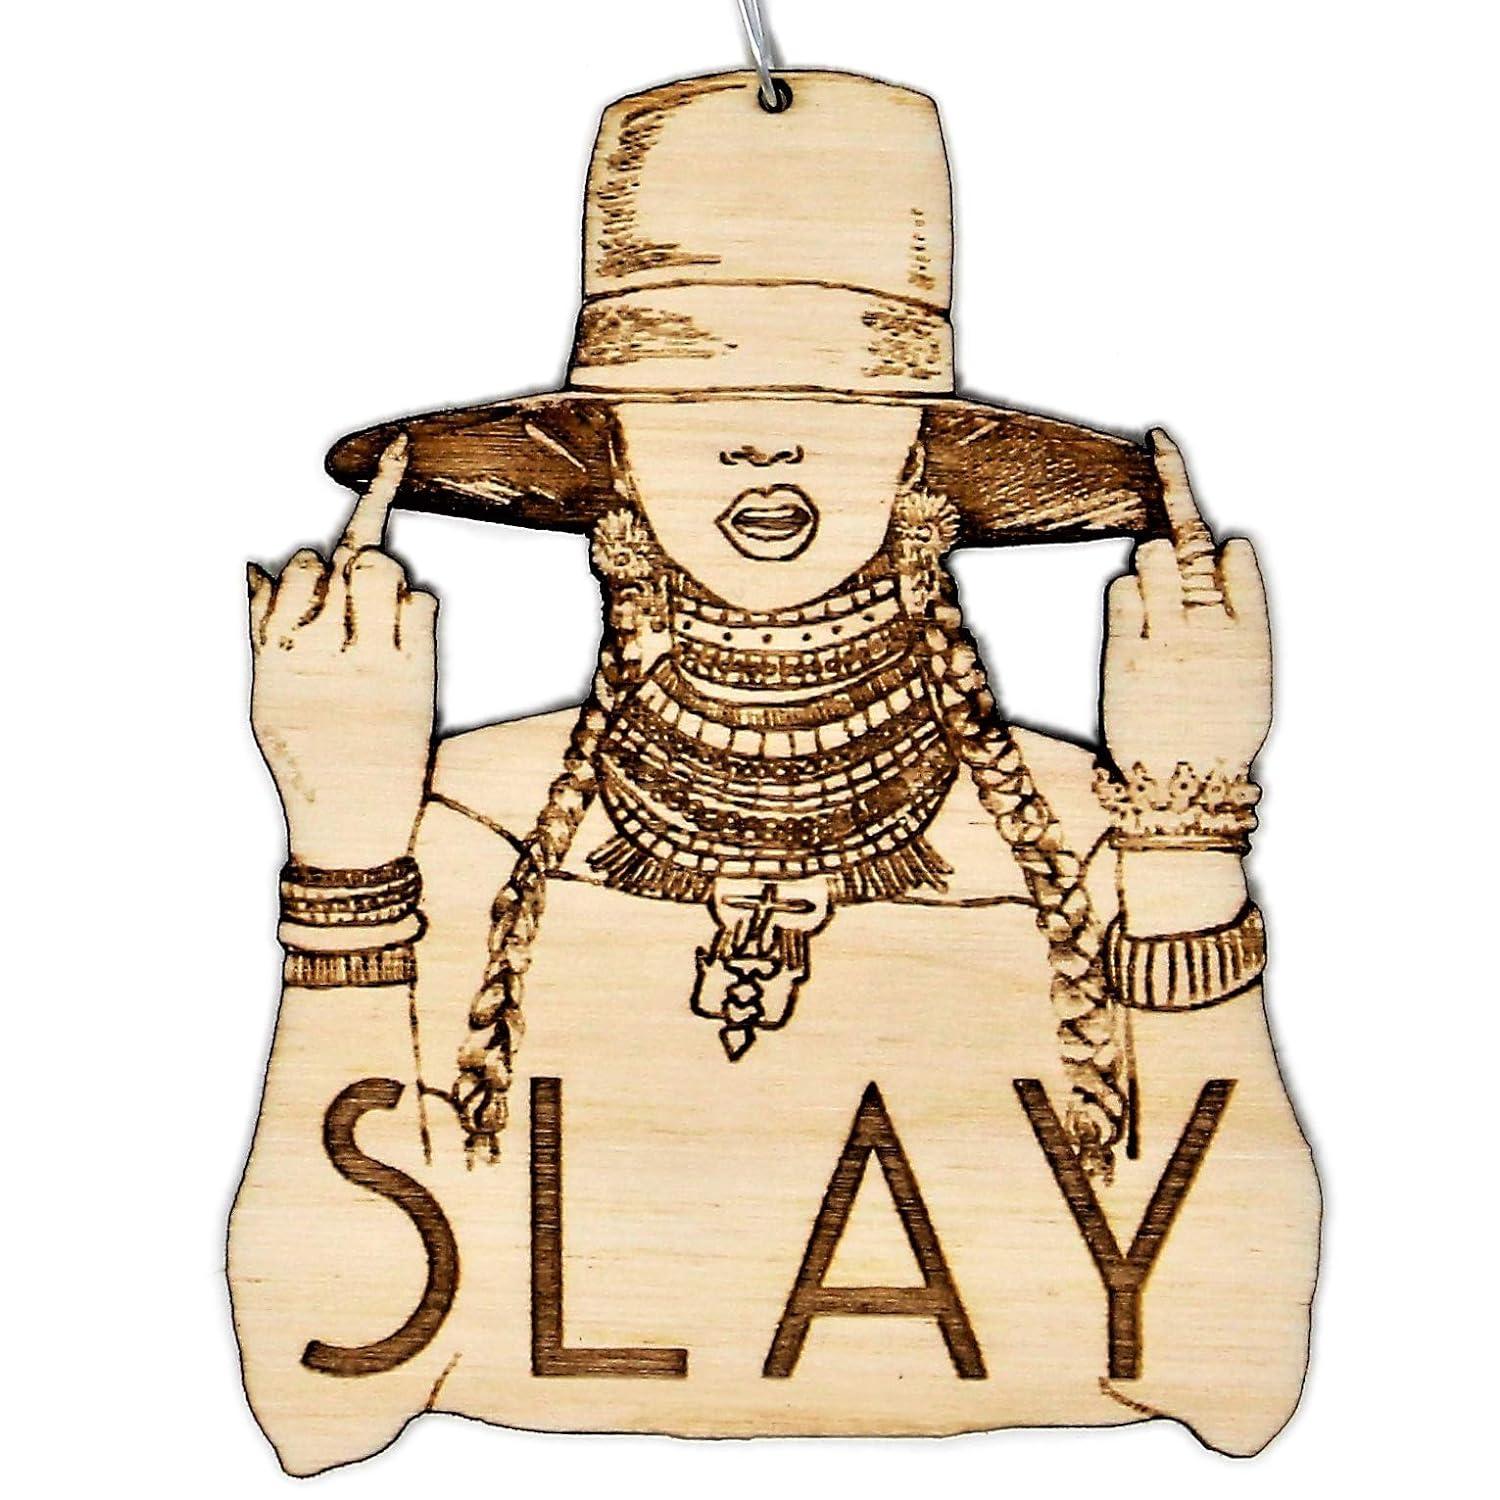 碧昂斯剪影的装饰品，上面写着“Slay”